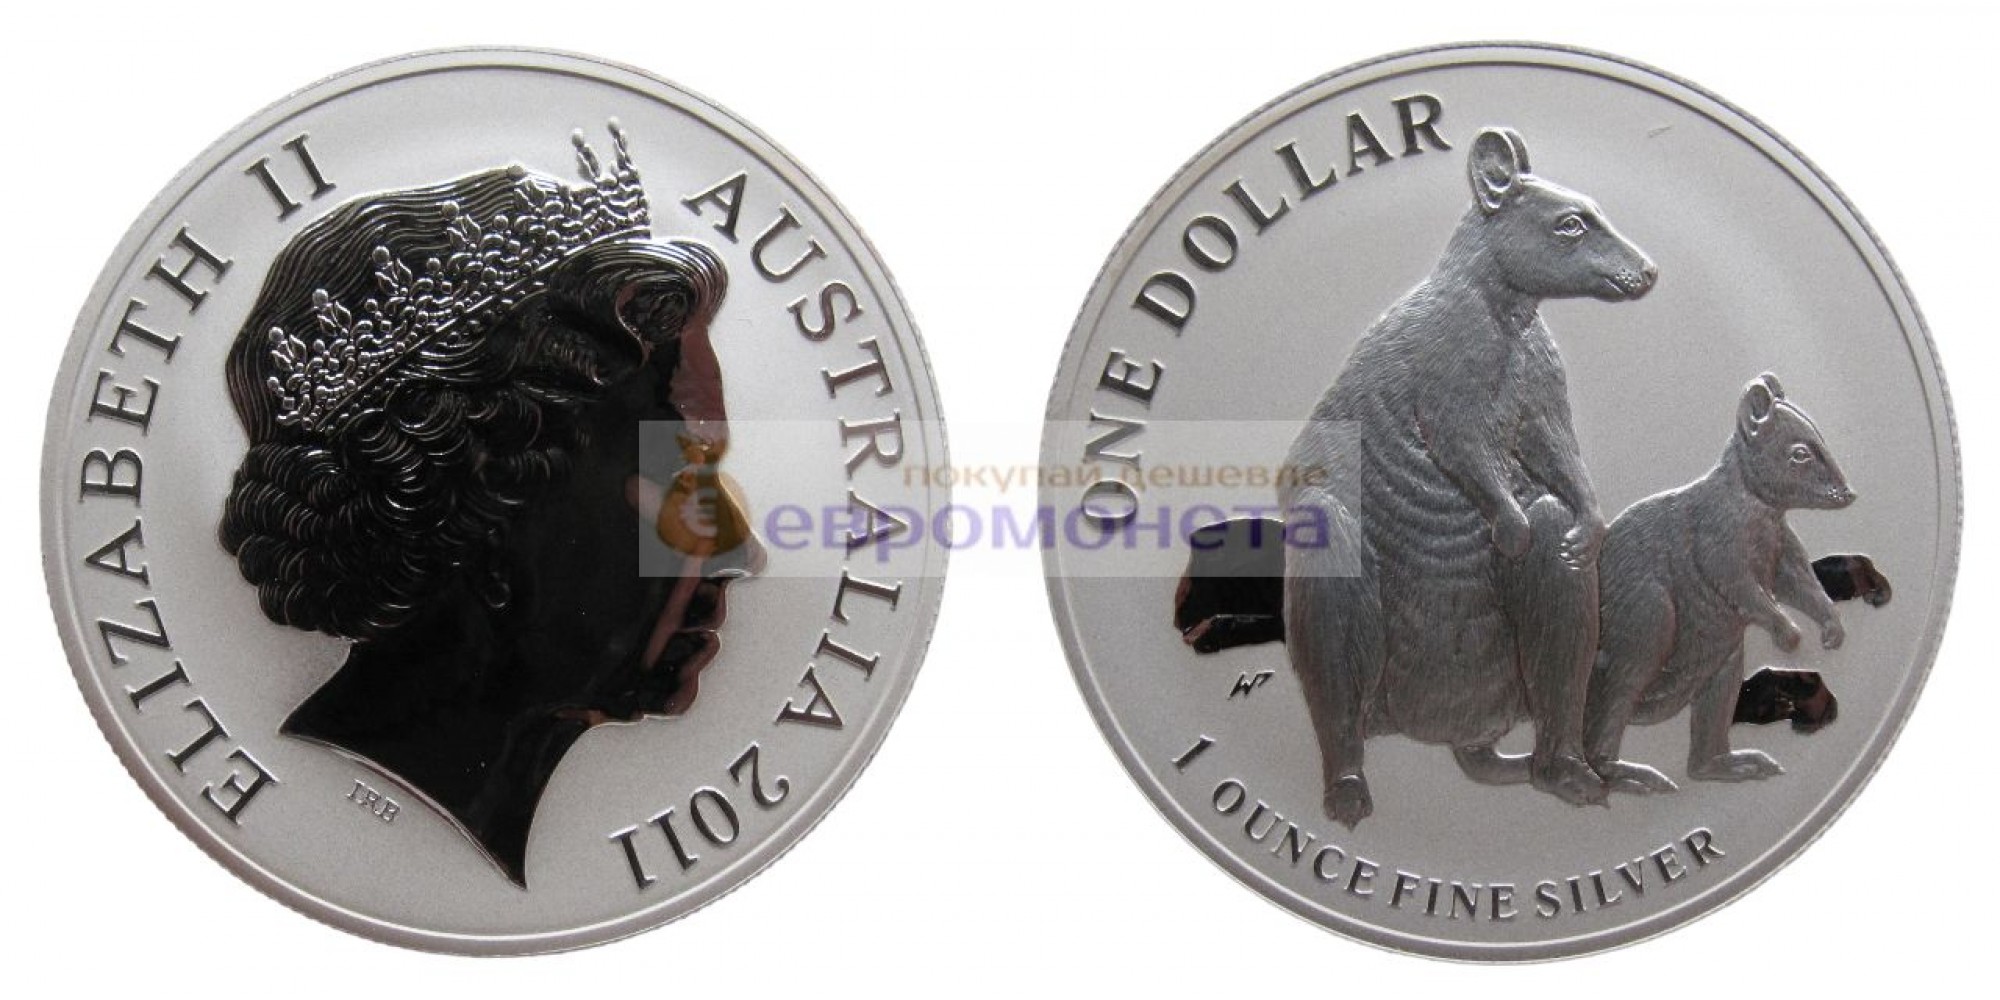 Австралия 1 доллар 2011 год Кенгуру с малышом /матовое поле монеты/. Серебро, пруф proof